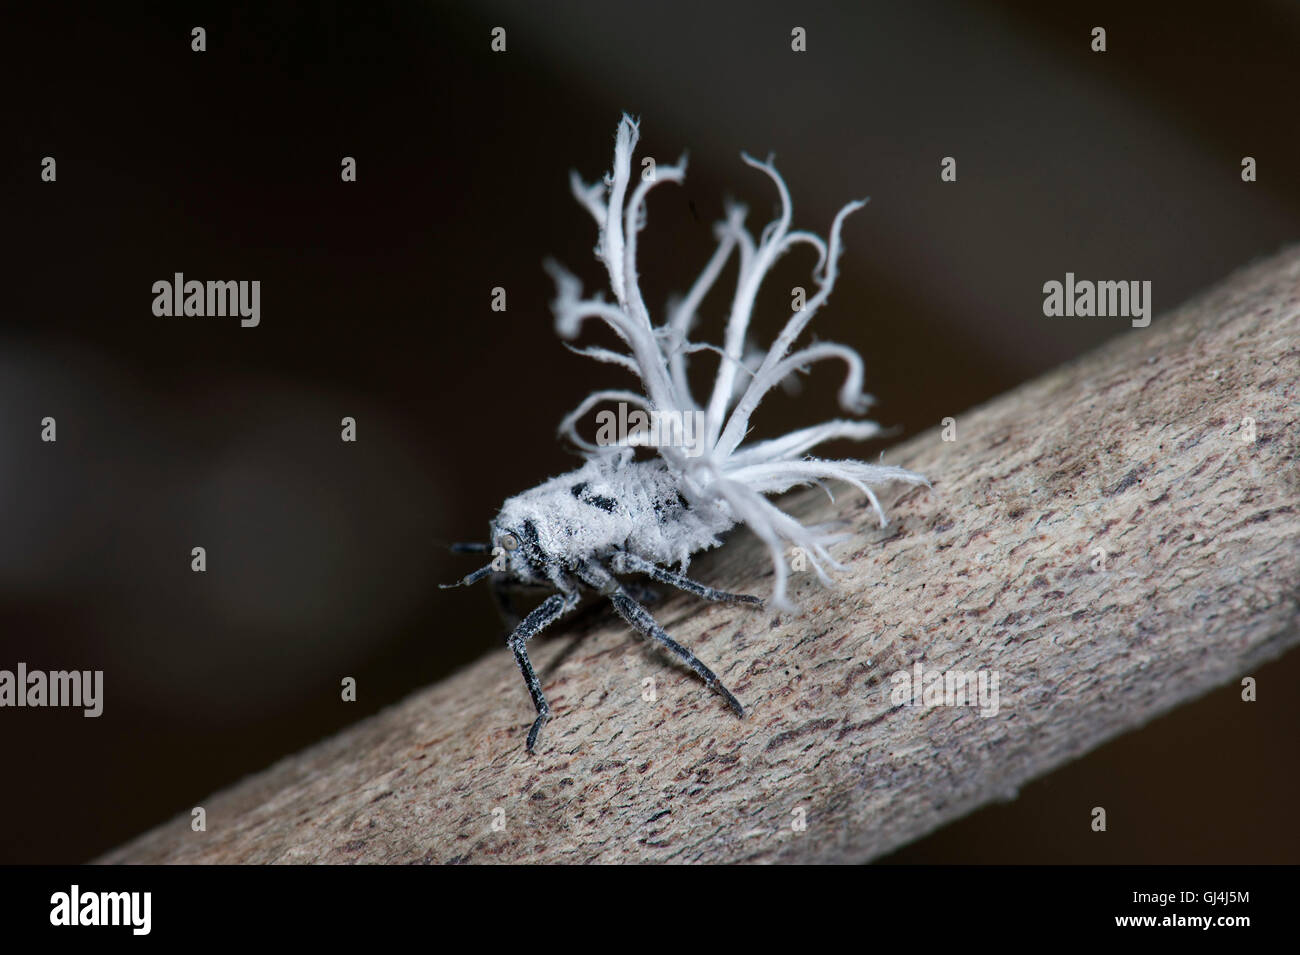 Flatid Phromnia malgache larves bug rosea Banque D'Images